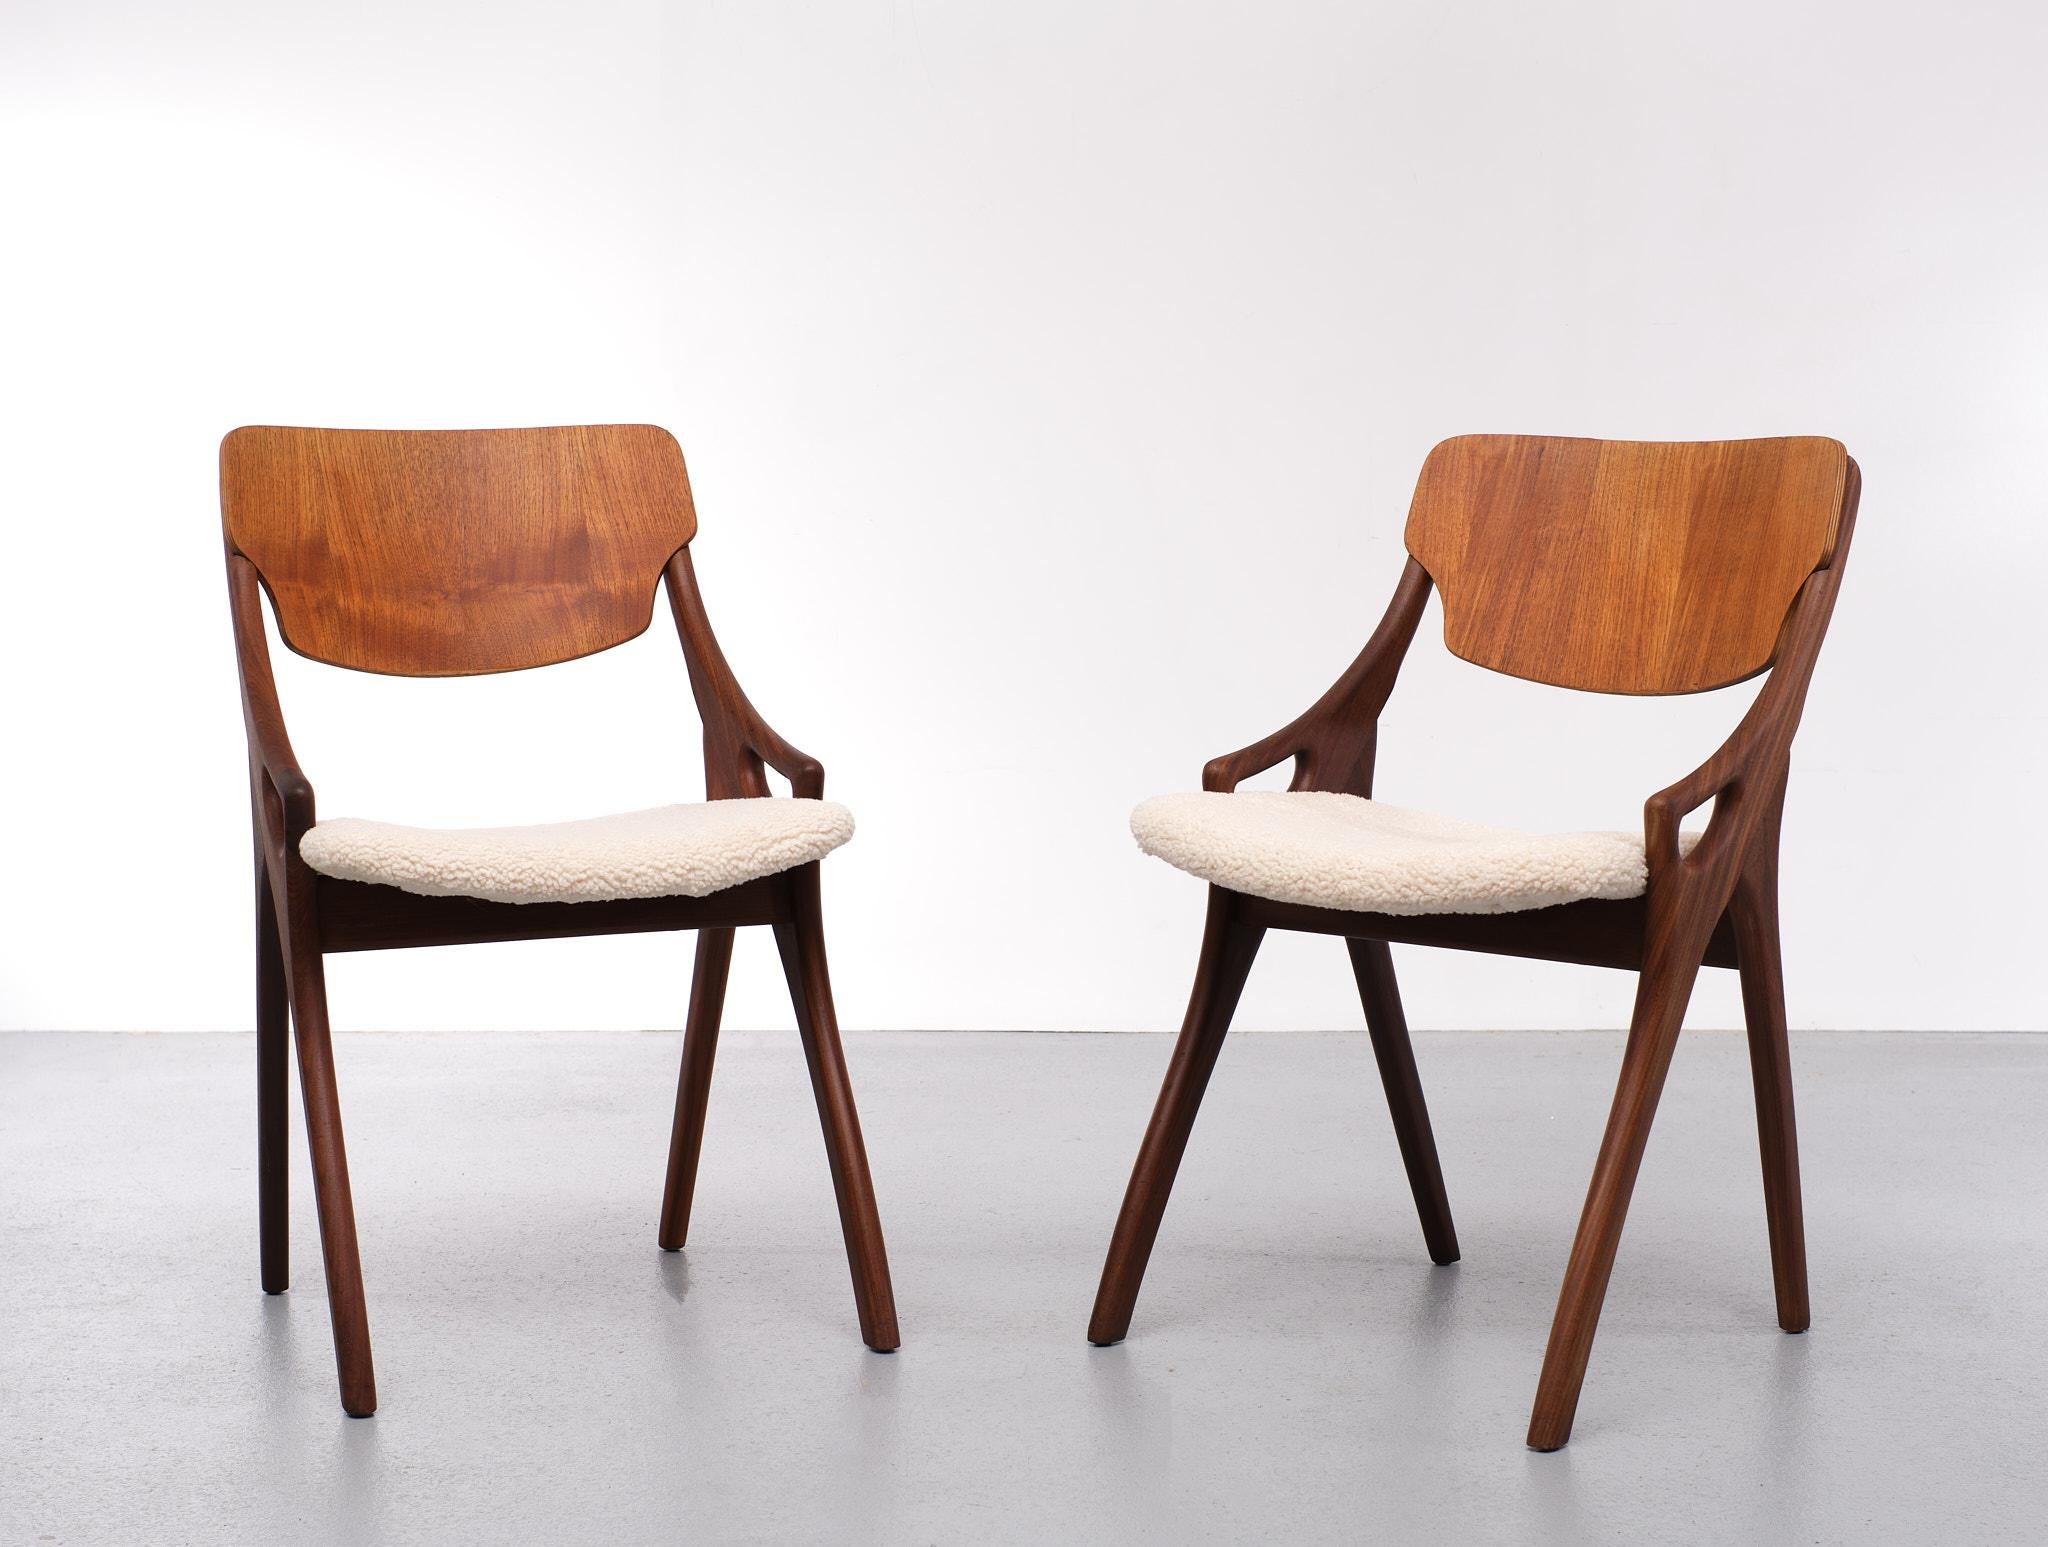 Mid-Century Modern Arne Hovland Olsen Chairs New Wool Upholstery 1958 Denmark